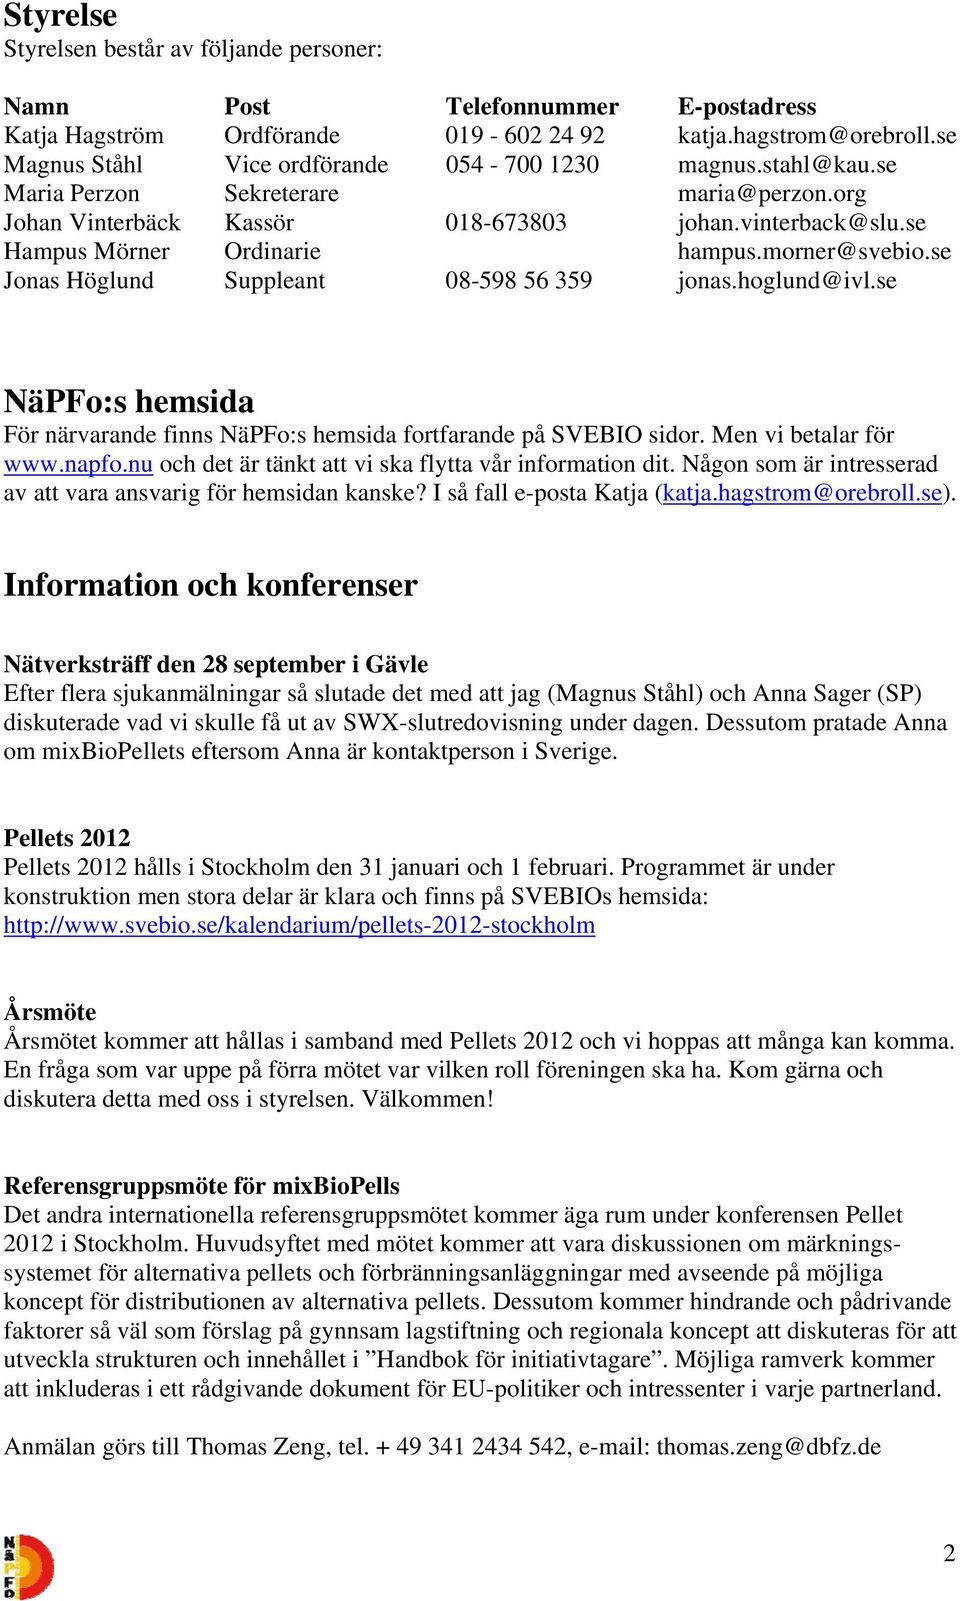 morner@svebio.se Jonas Höglund Suppleant 08-598 56 359 jonas.hoglund@ivl.se NäPFo:s hemsida För närvarande finns NäPFo:s hemsida fortfarande på SVEBIO sidor. Men vi betalar för www.napfo.